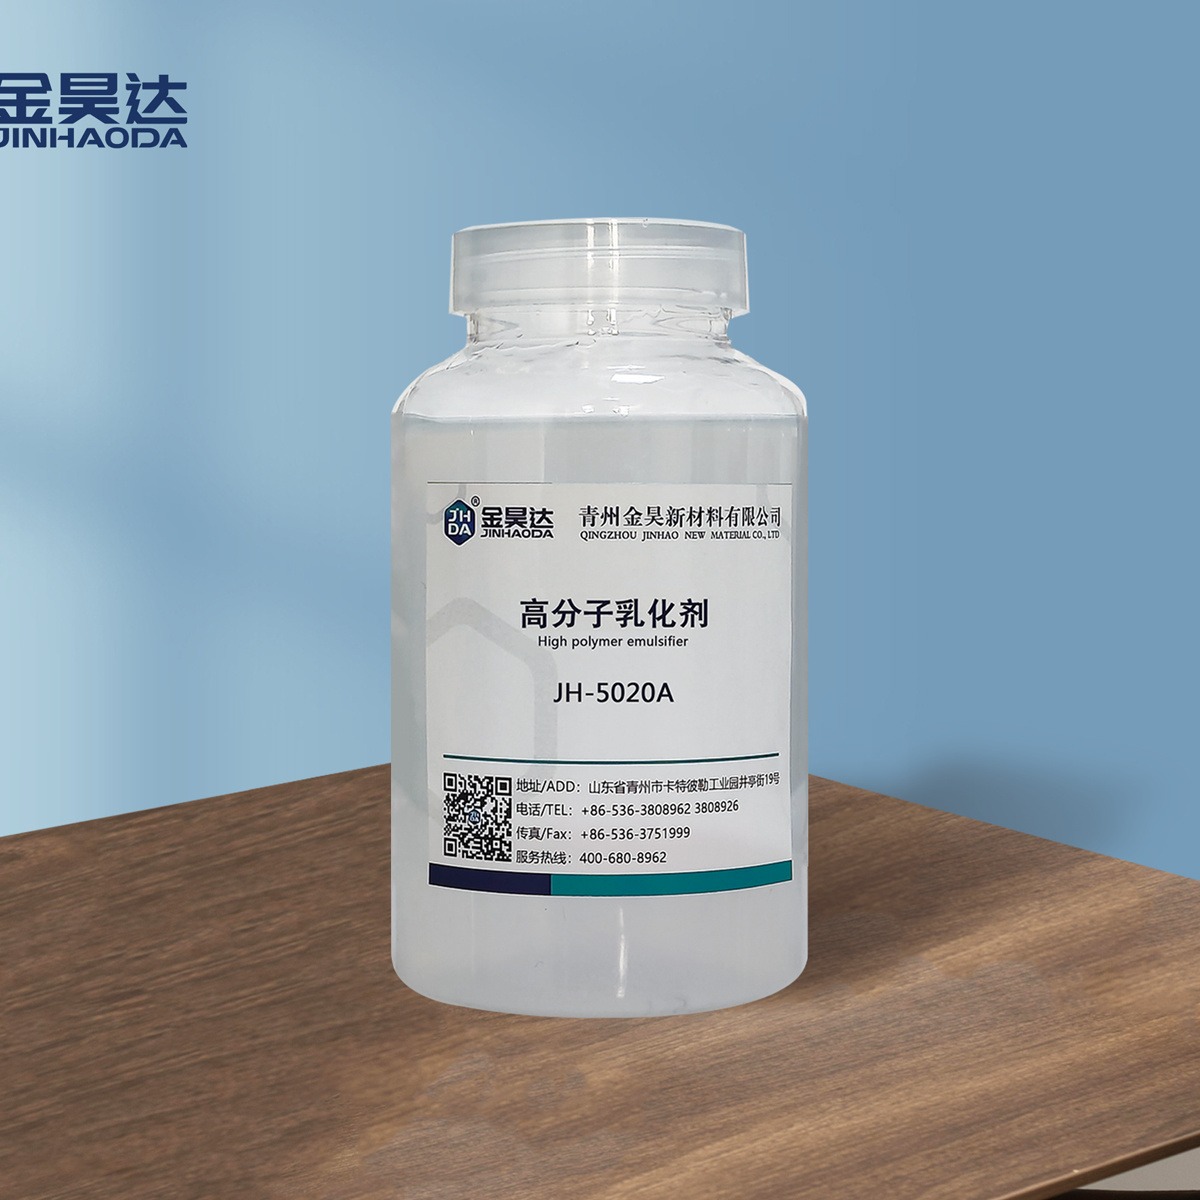 山东金昊JH-5020A高分子akd乳化剂 稳定性能好 专业生产厂家 高分子乳化剂 AKD乳化剂